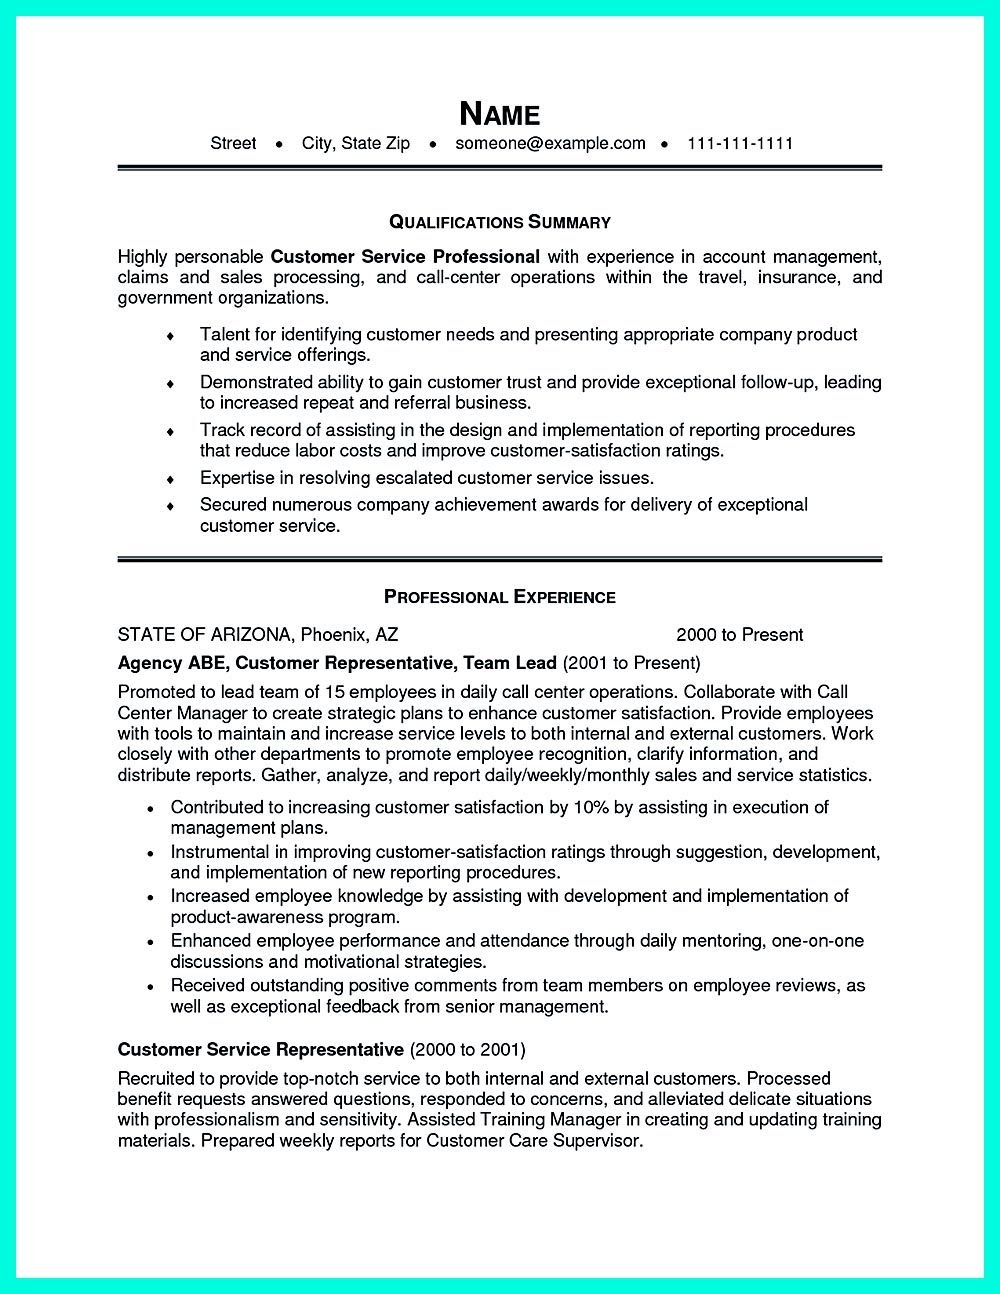 example of skills summary on resume